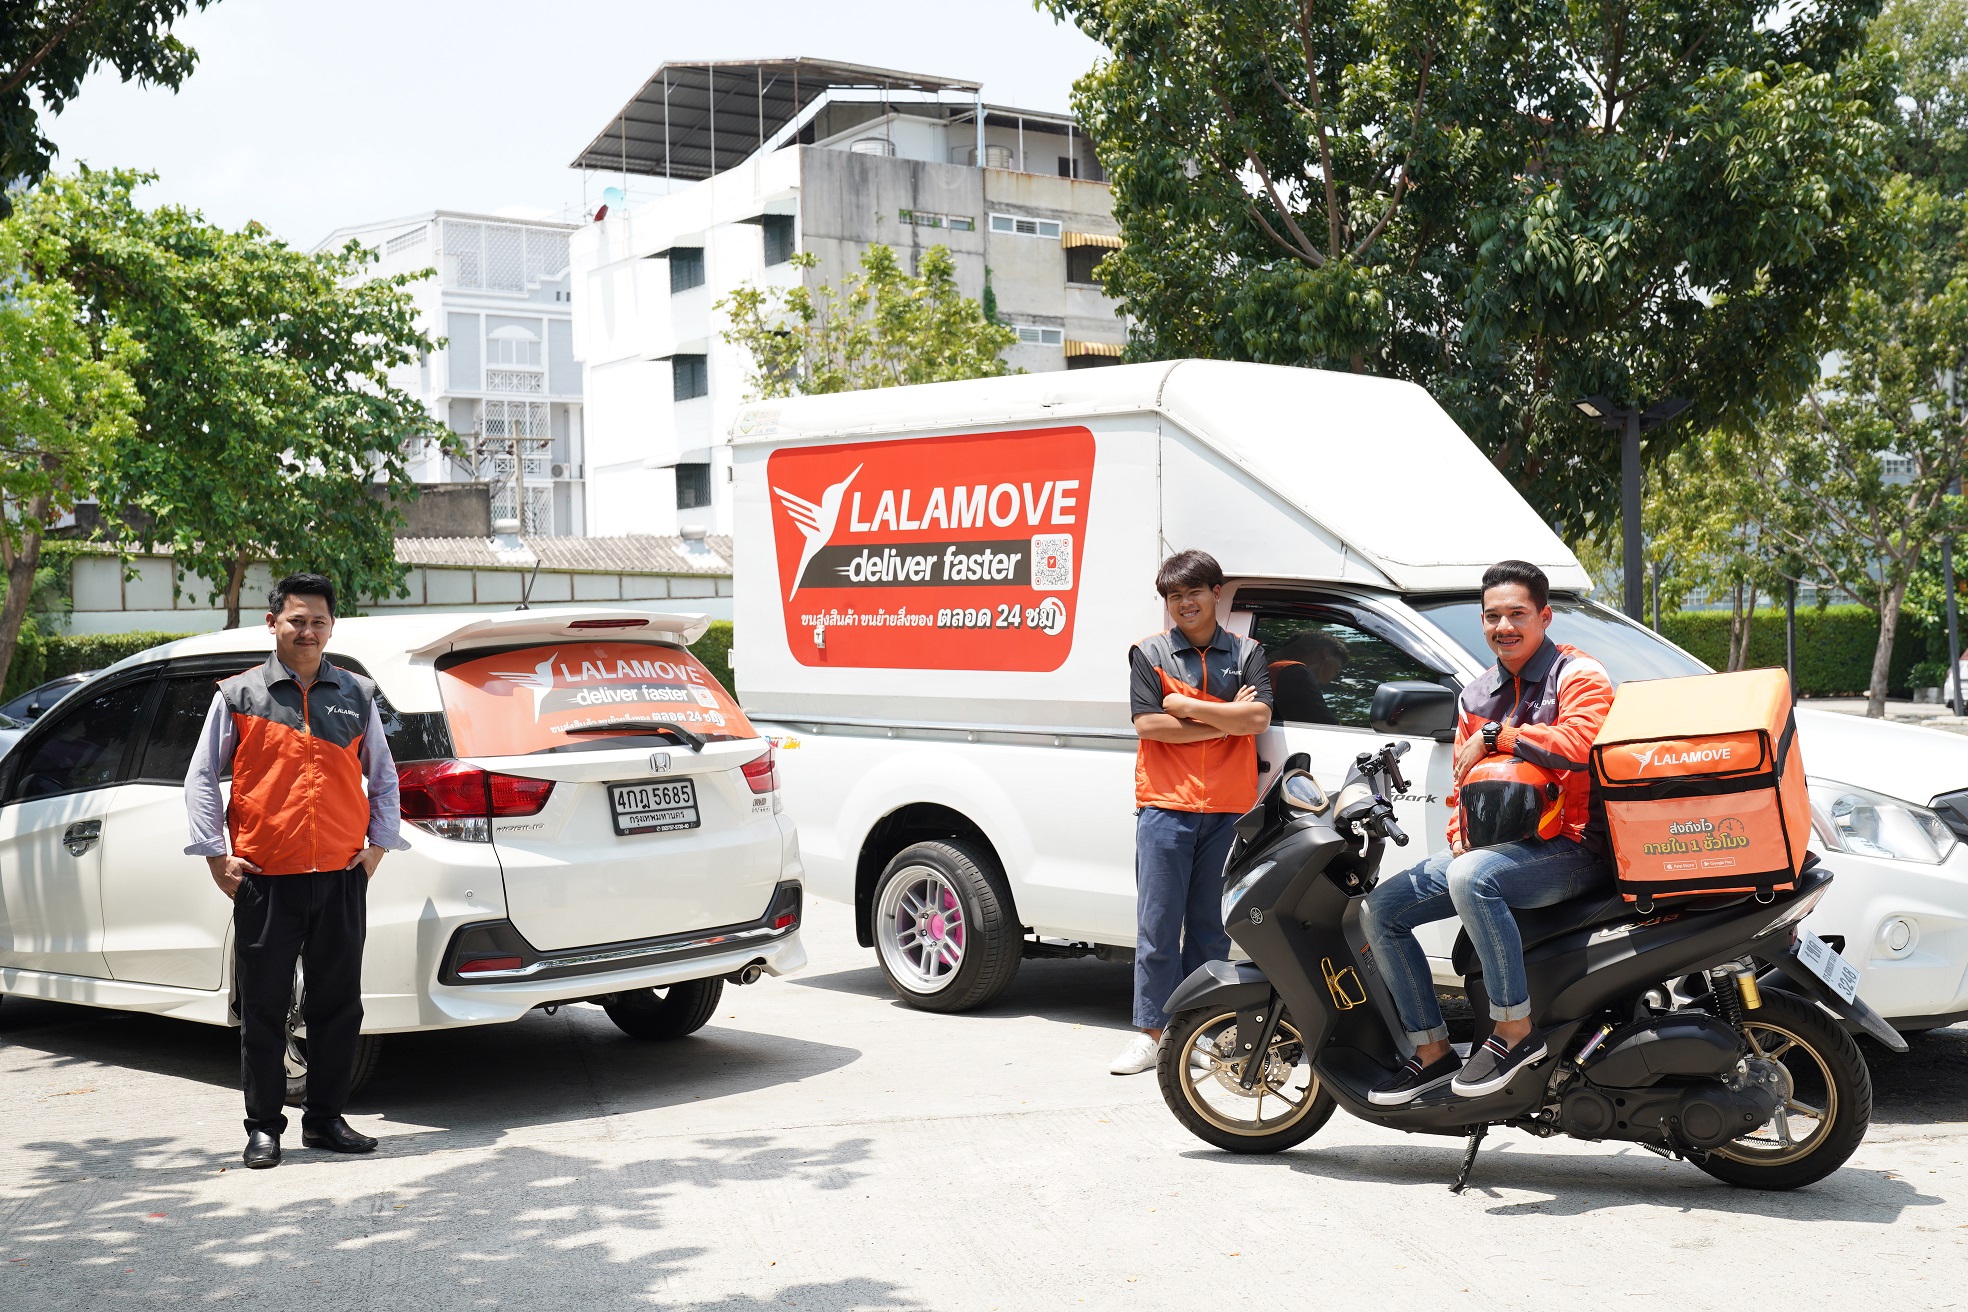 ลาลามูฟ ร่วมด้วยช่วยคนไทย ฝ่าวิกฤติ ต้านโควิด-19 เปิดรับพนักงานใหม่หลายอัตรา พร้อมออกมาตรการคุ้มครองผู้บริโภคและคนขับ